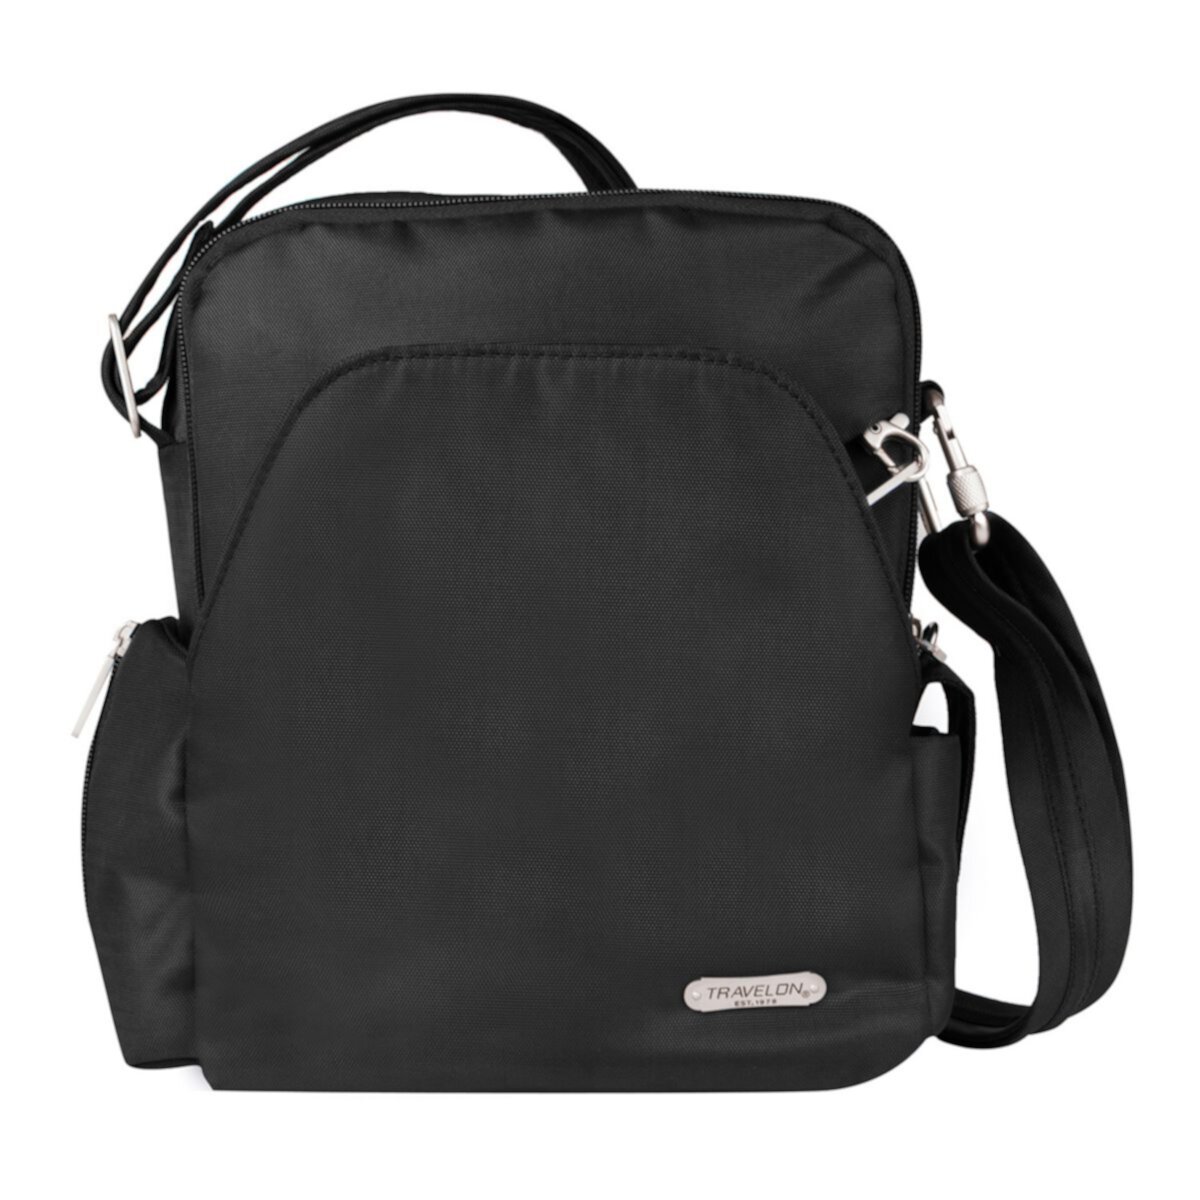 Дорожная сумка Travelon с защитой от кражи Travelon